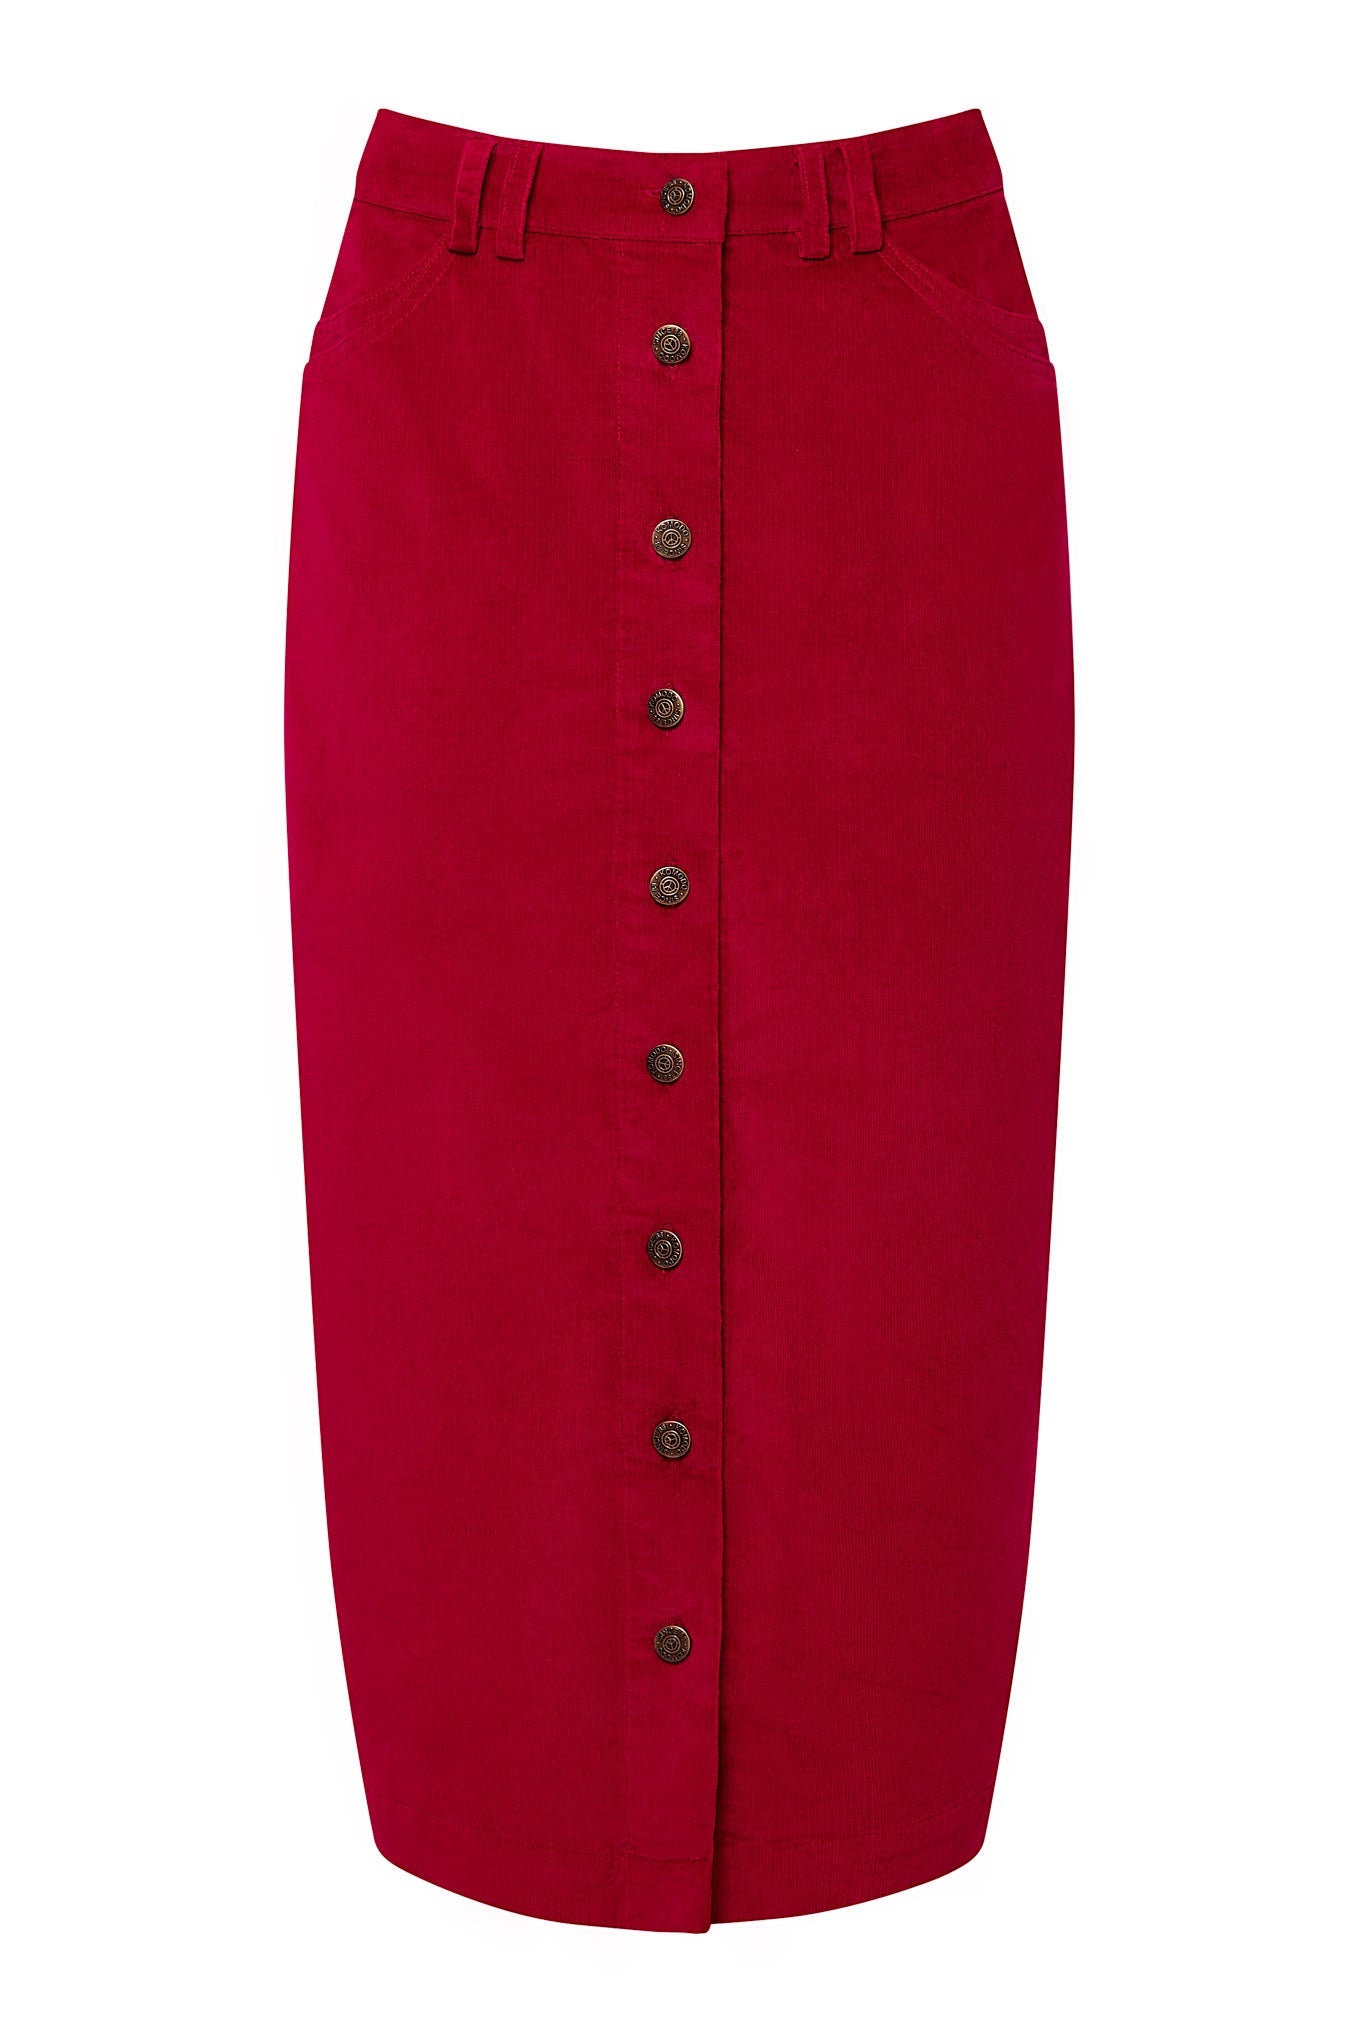 Jupe rouge en velours côtelé ISABEL en coton biologique par Komodo 